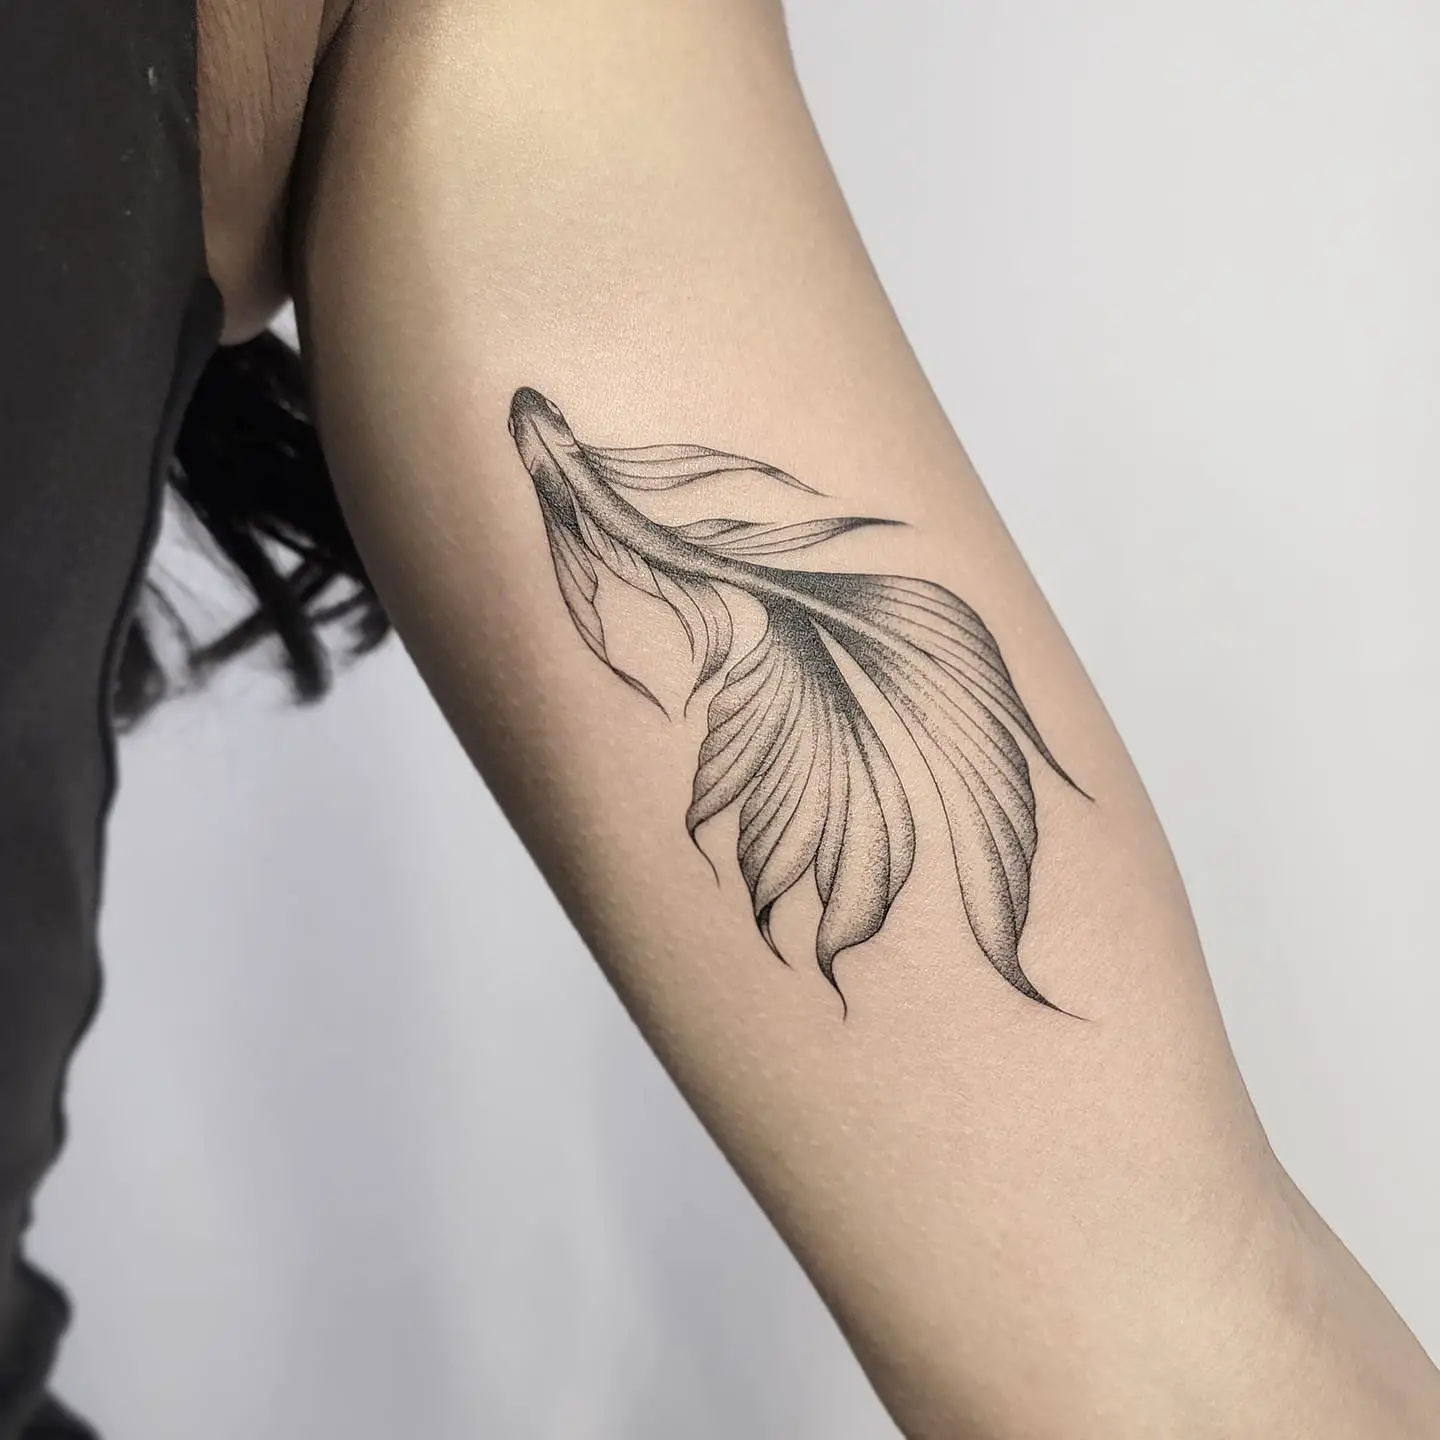 Koi fish tattoo by tattooer owen